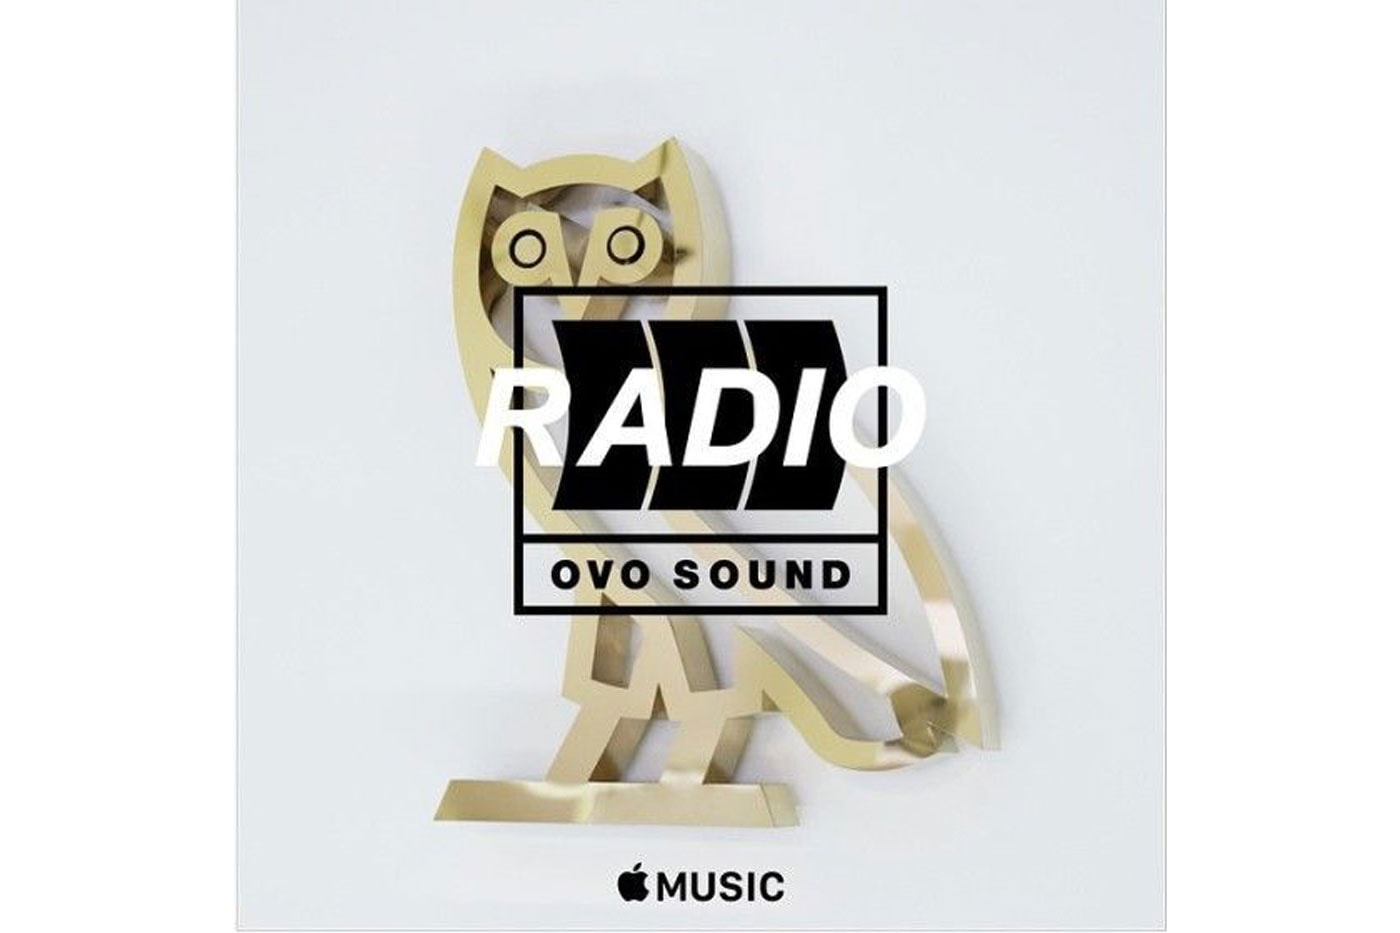 Listen to the Third Episode of OVO Sound Radio